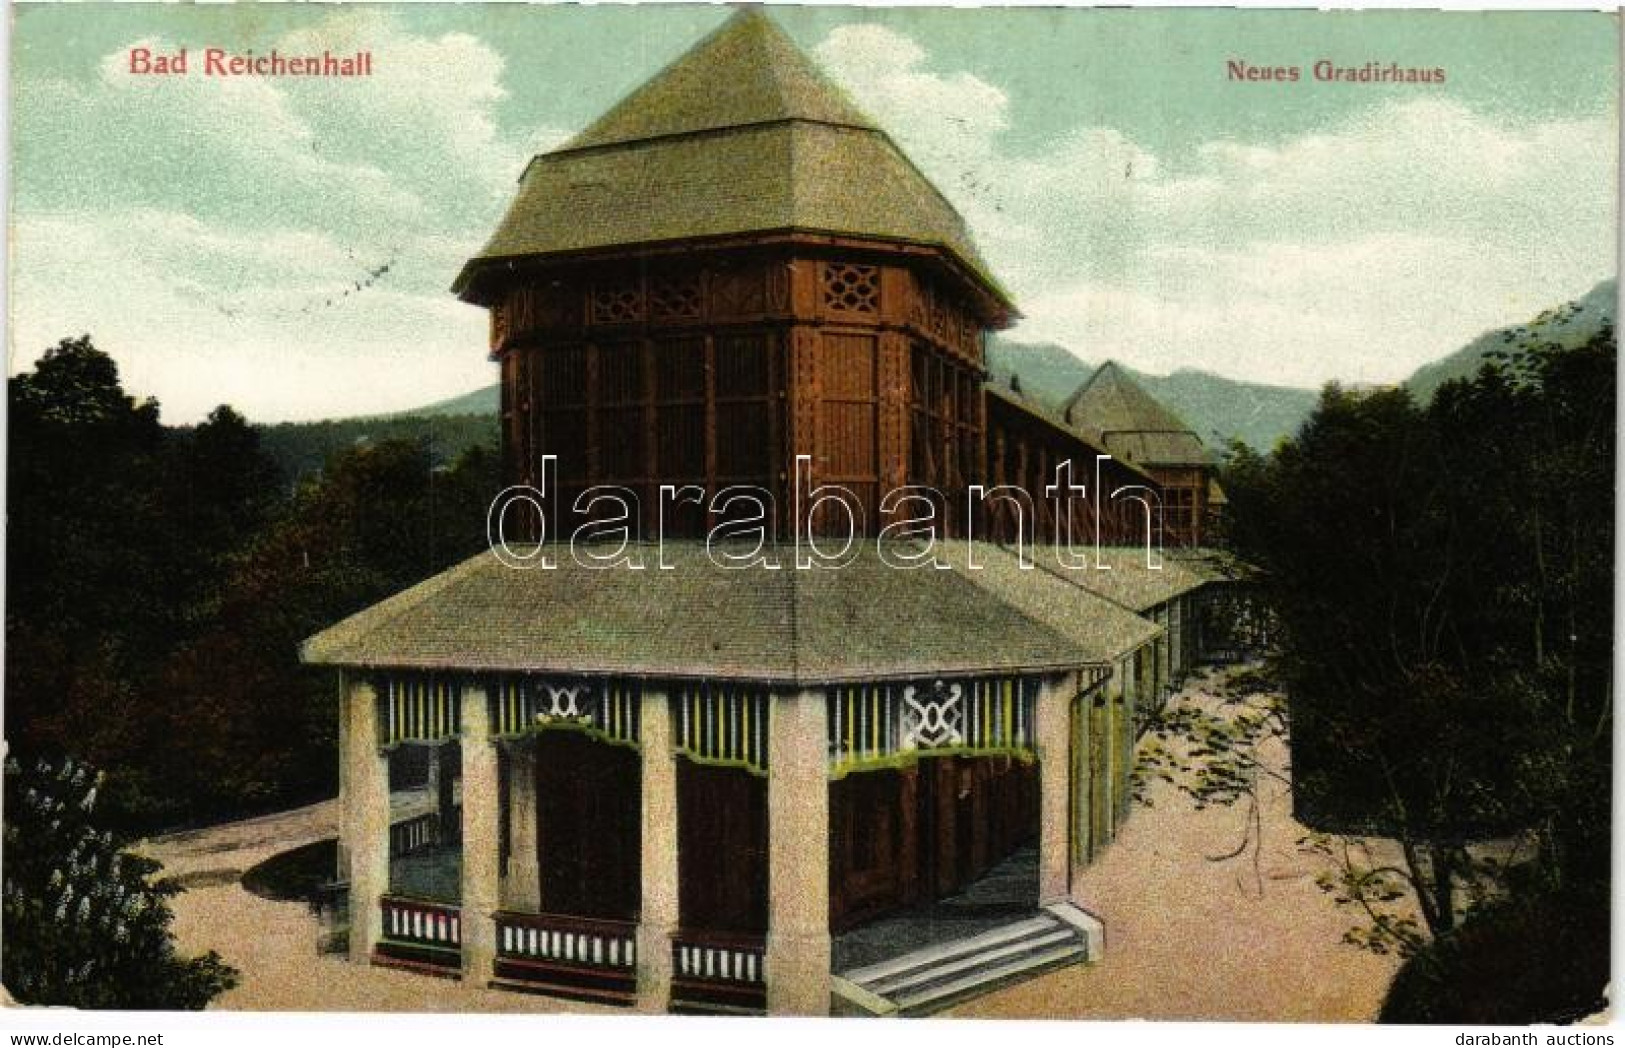 T2/T3 1910 Bad Reichenhall, Neues Gradirhaus / Spa, Bath. B. Lehrburger No. 18999. (EK) - Non Classés